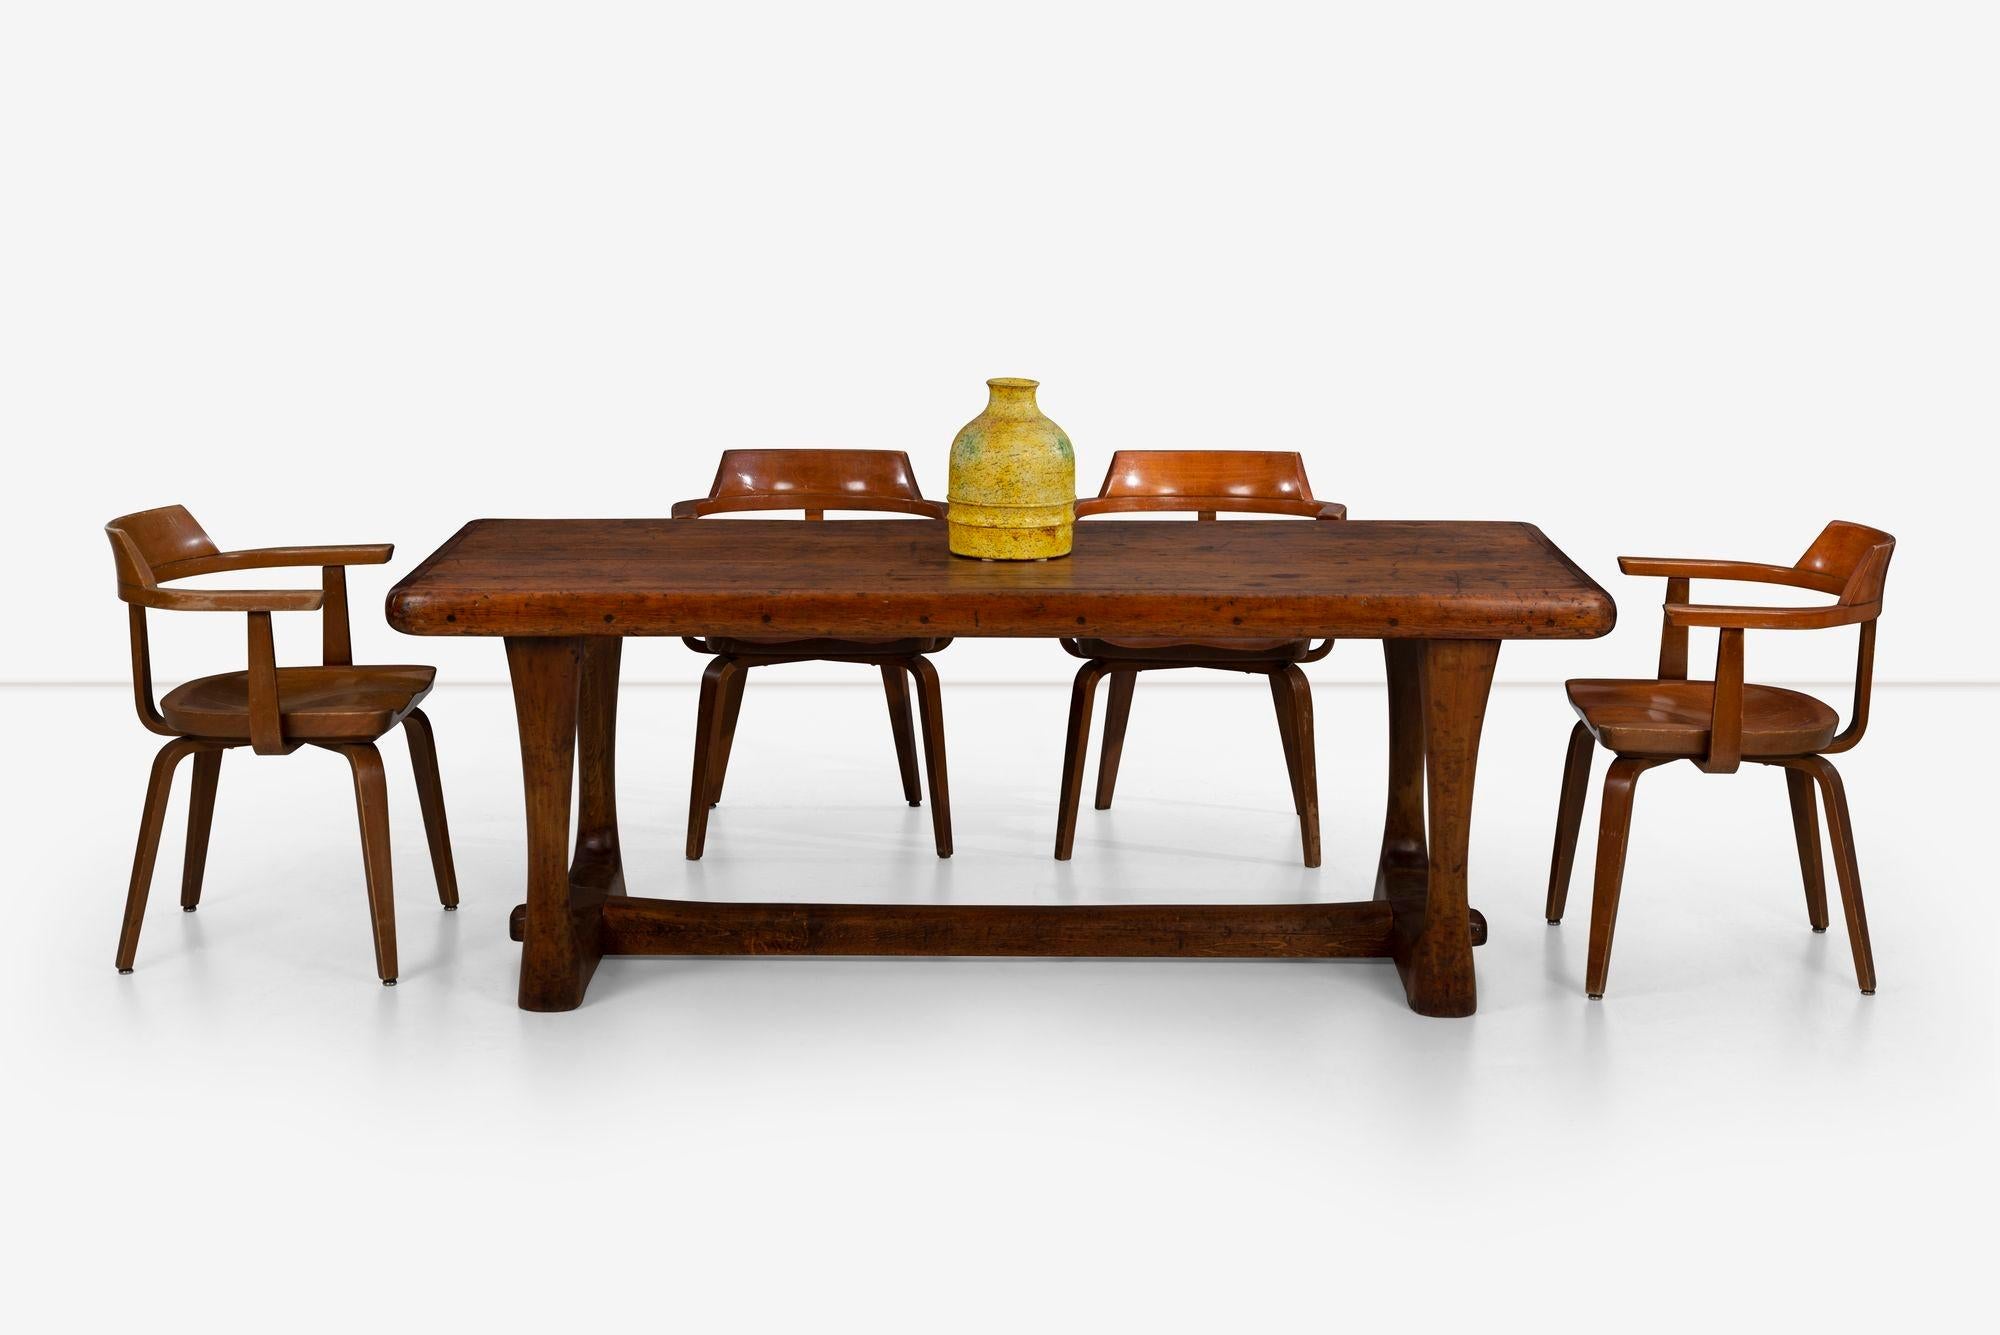 Importante table Esherick de la Collection Hedgerow. Fabriqué par Esherick en 1924. On pense que cette table a été utilisée par Esherick dans la maison familiale de Sunekrest avant 1938. Cette année-là, Esherick a amélioré la forme de la table en